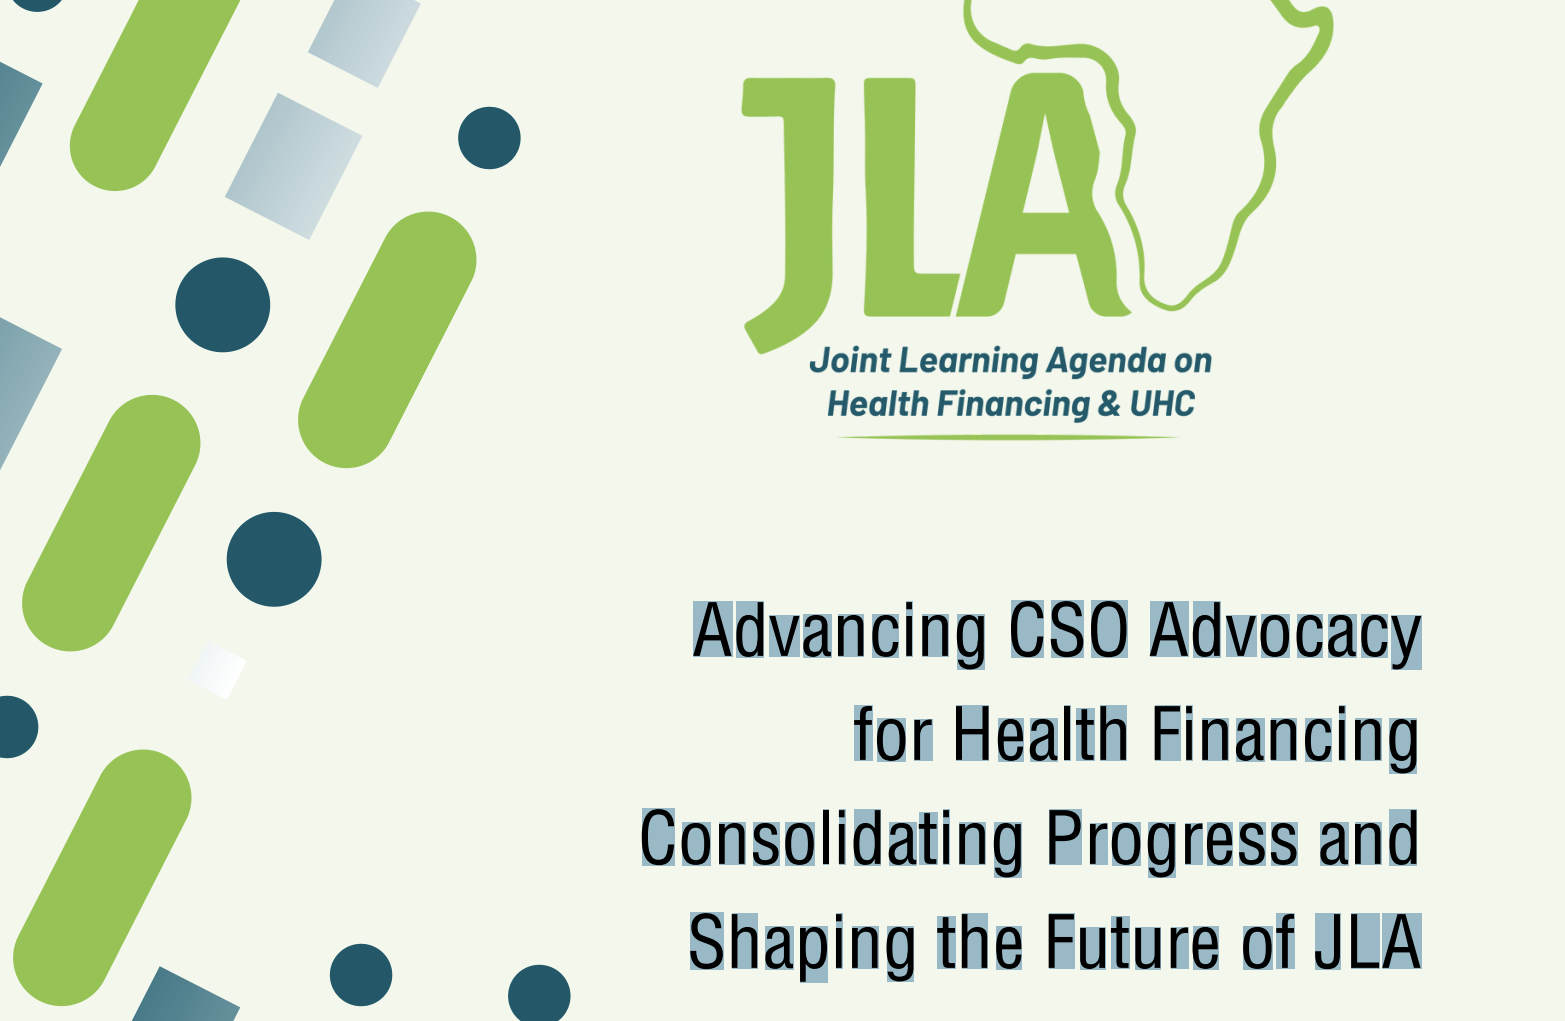 Программа JLA по адвокации ОГО для финансирования здравоохранения